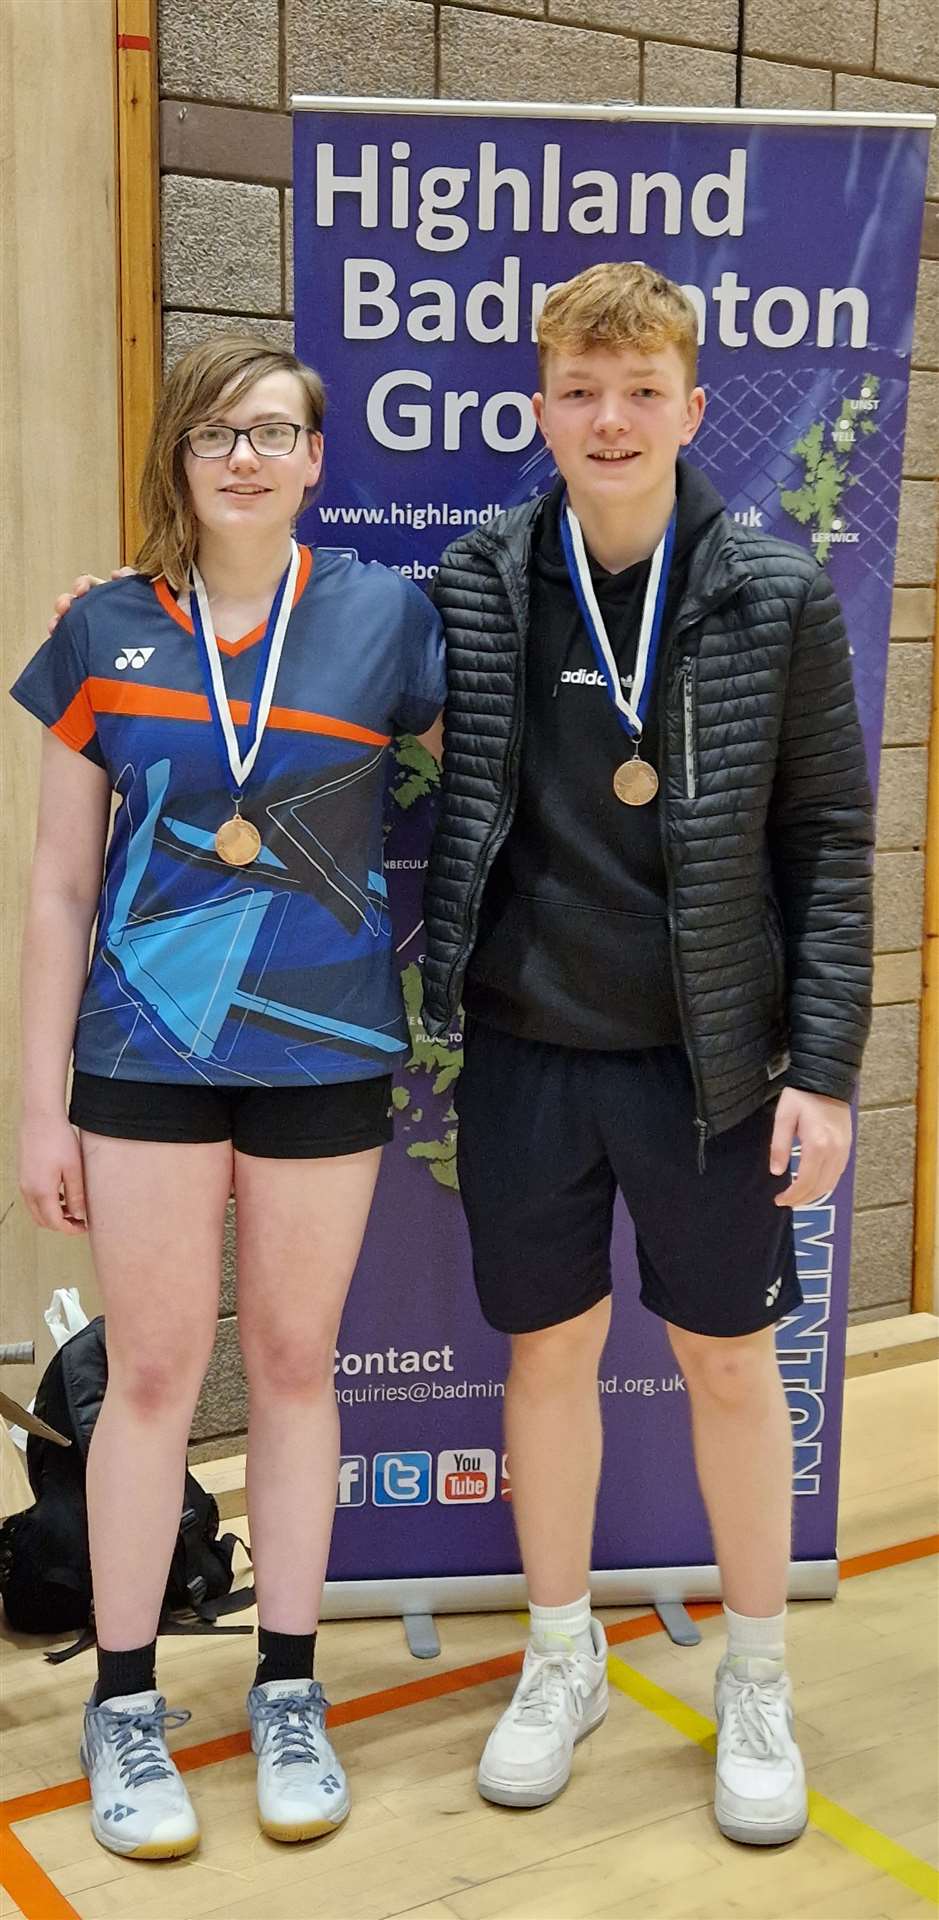 Under-19 consolation winners Chloe Mackenzie and Sam Groundwater.